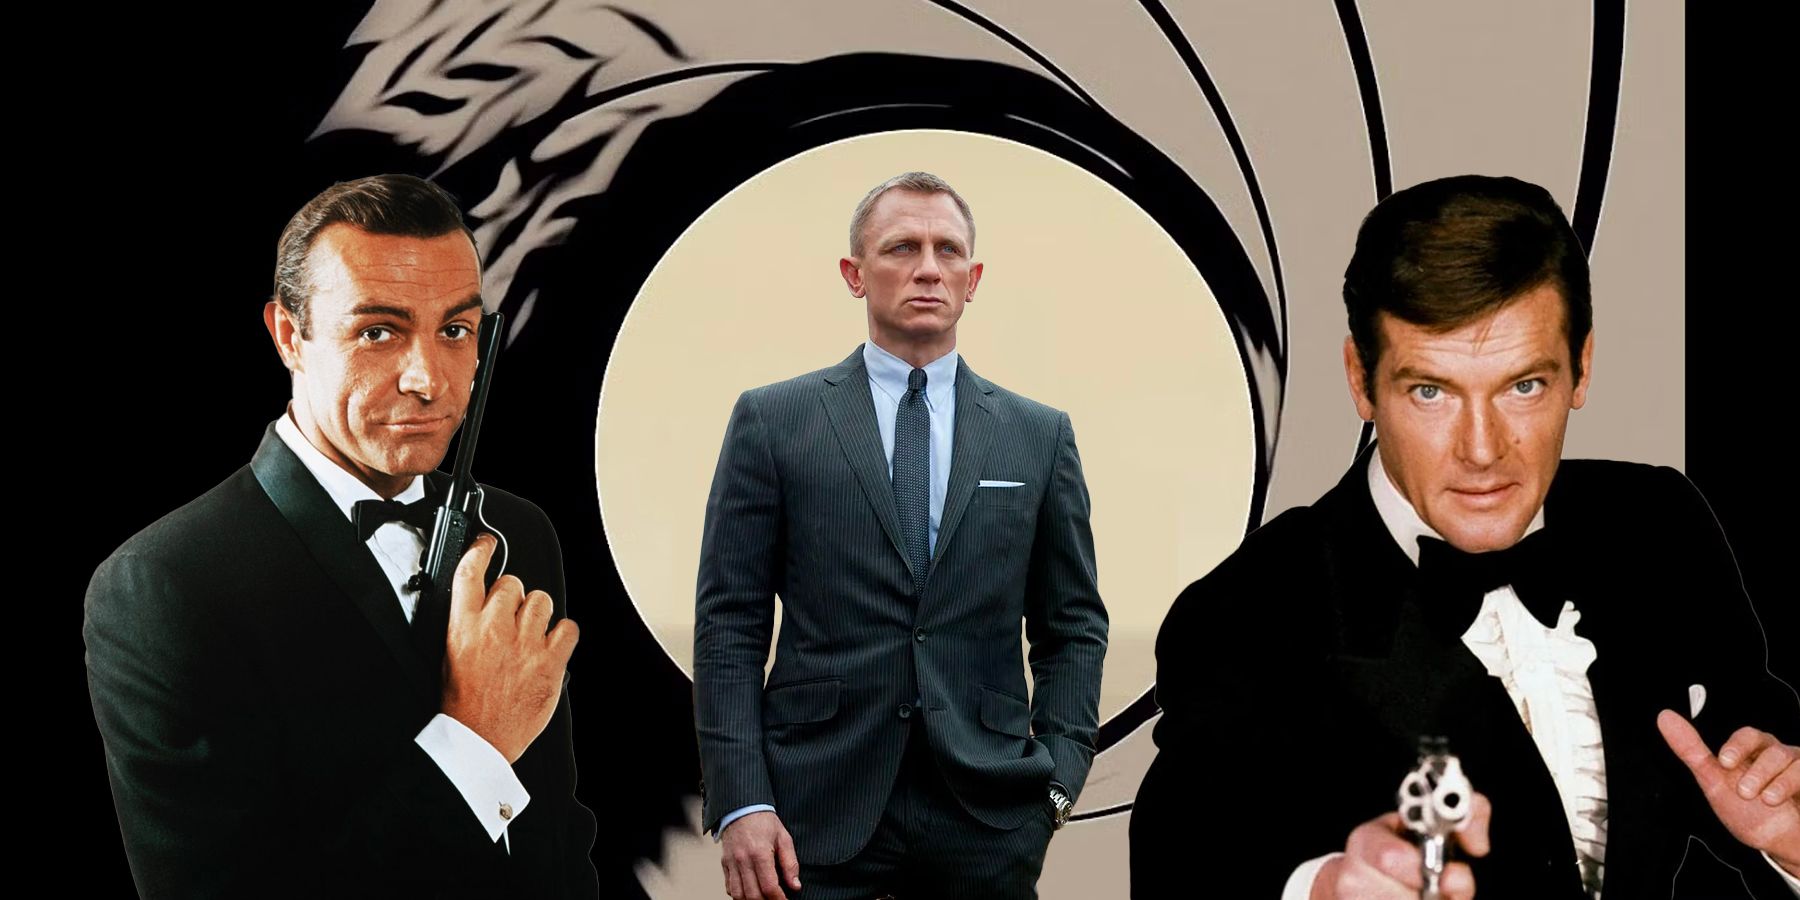 James Bond AI 007 Actors